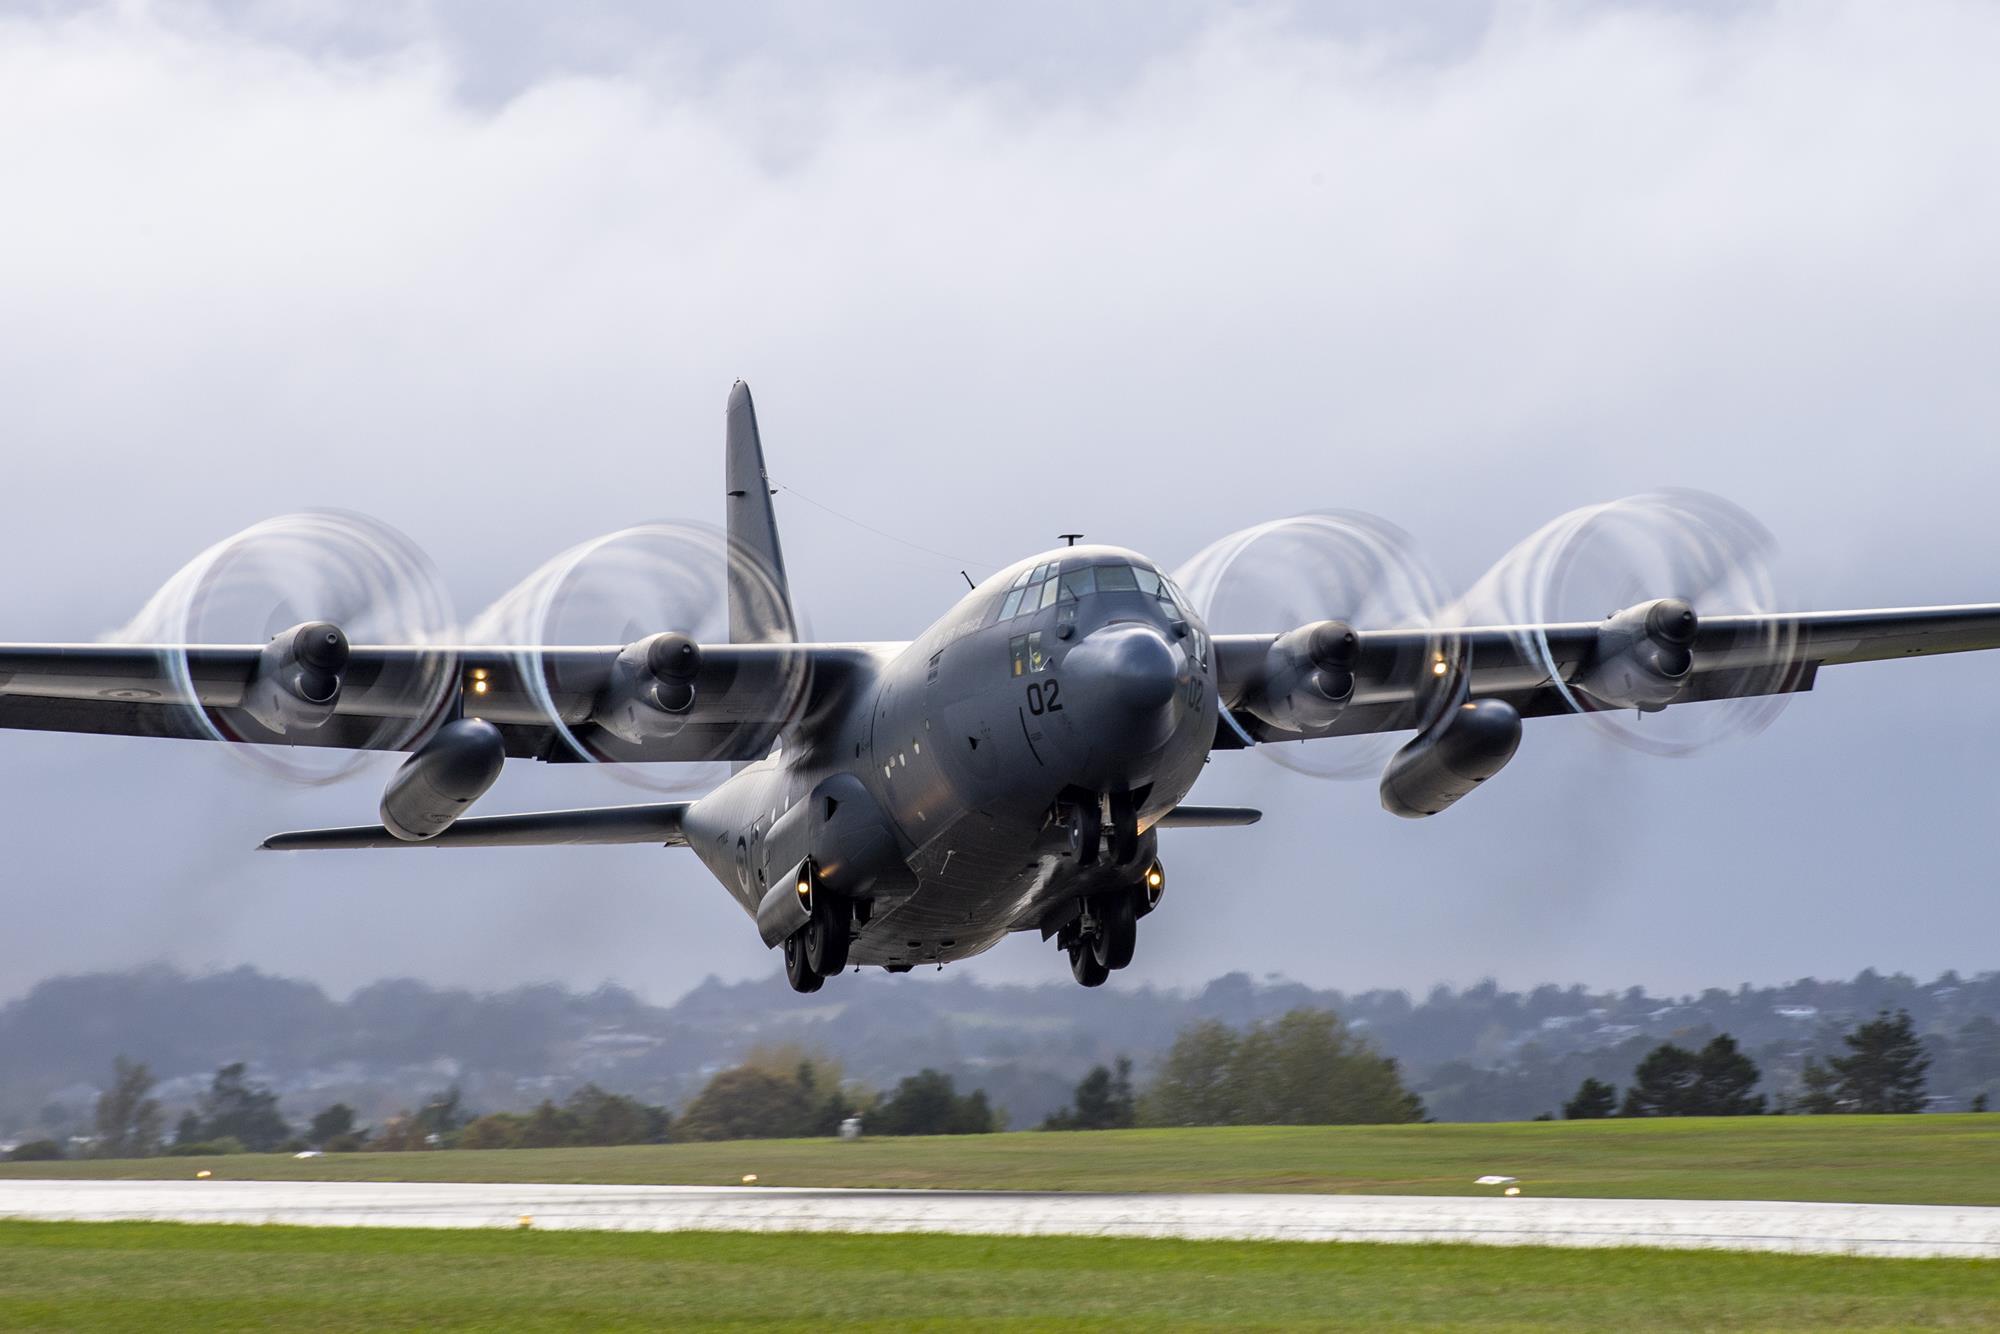 Defesa em Foco no LinkedIn: Embraer C-390 vence Hercules C-130J na